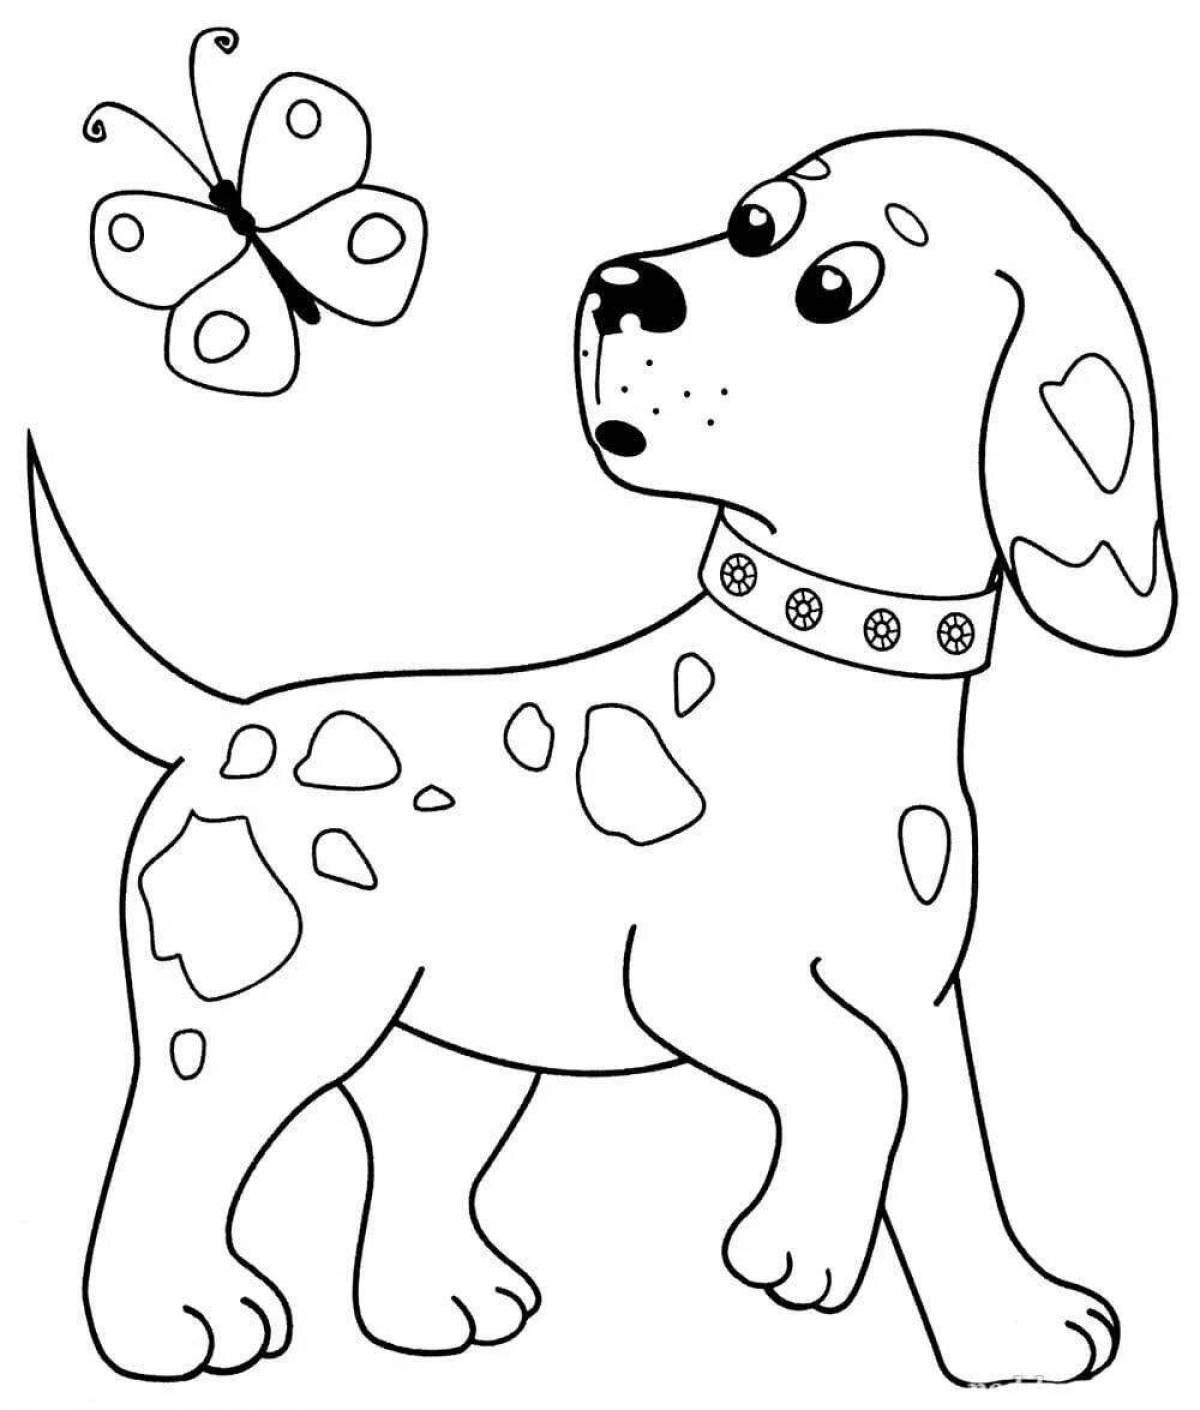 Веселая раскраска собака для детей 6-7 лет